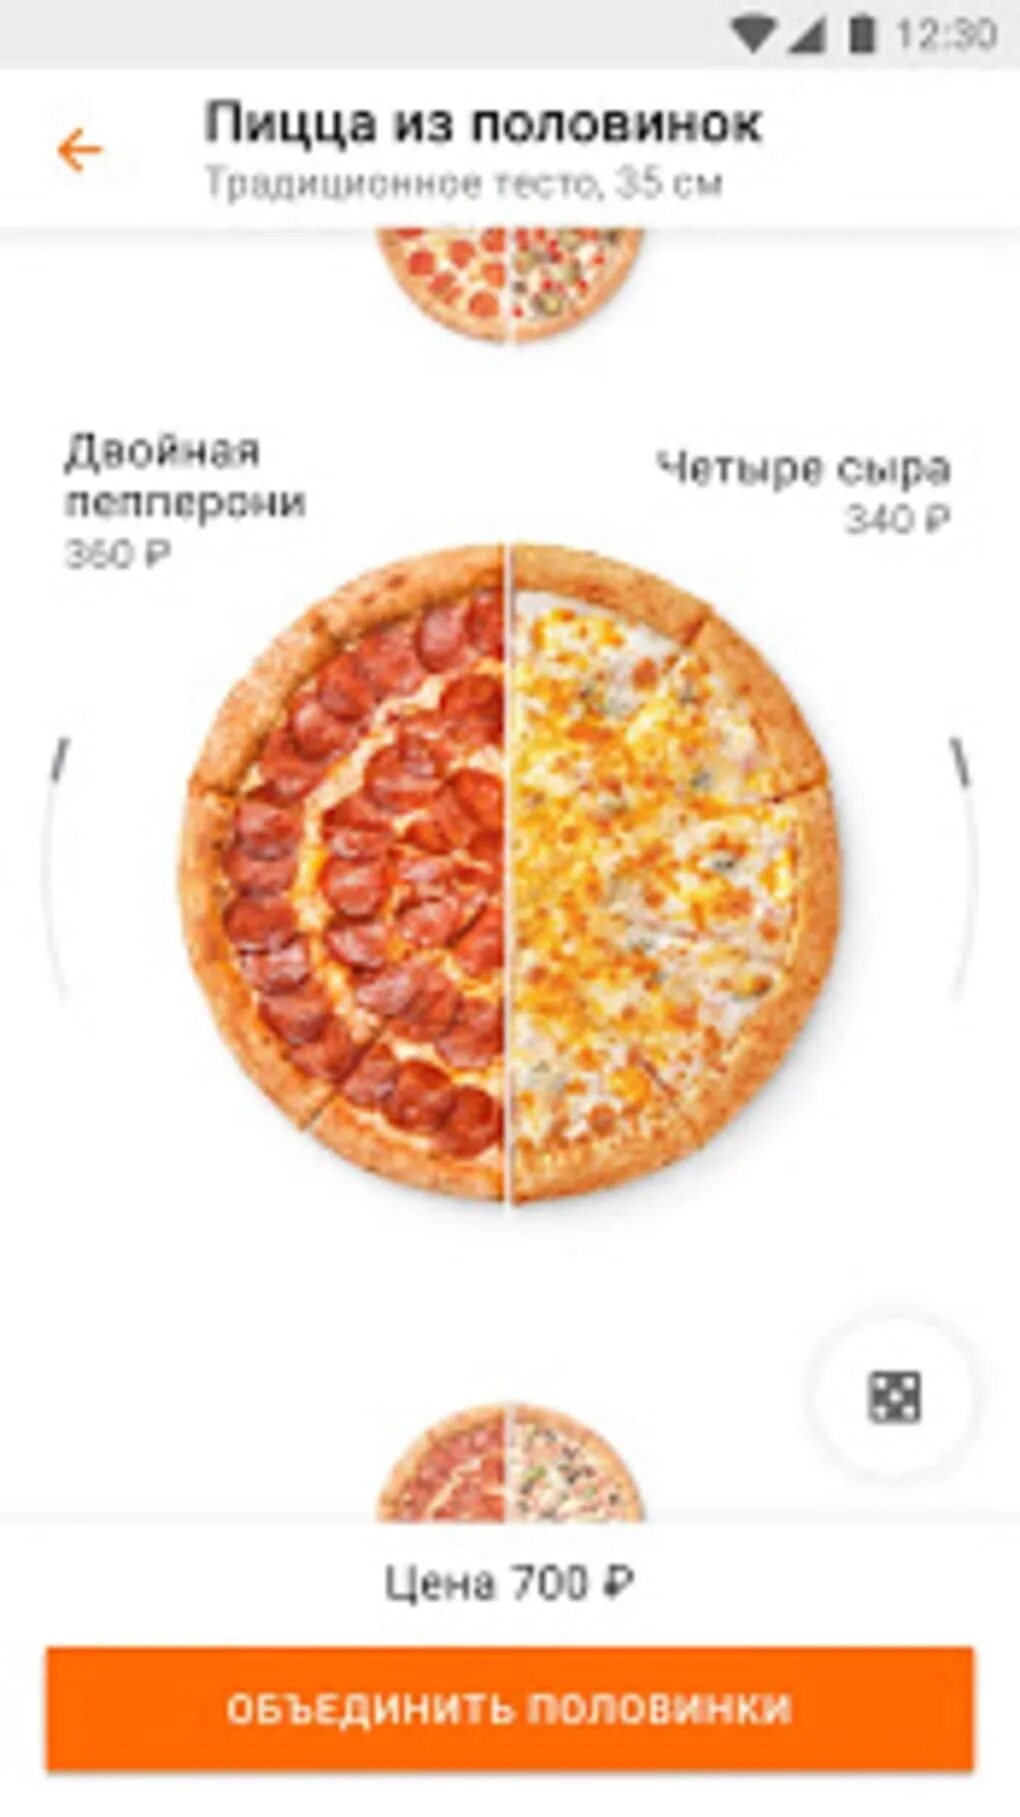 Сколько стоит кусок пиццы